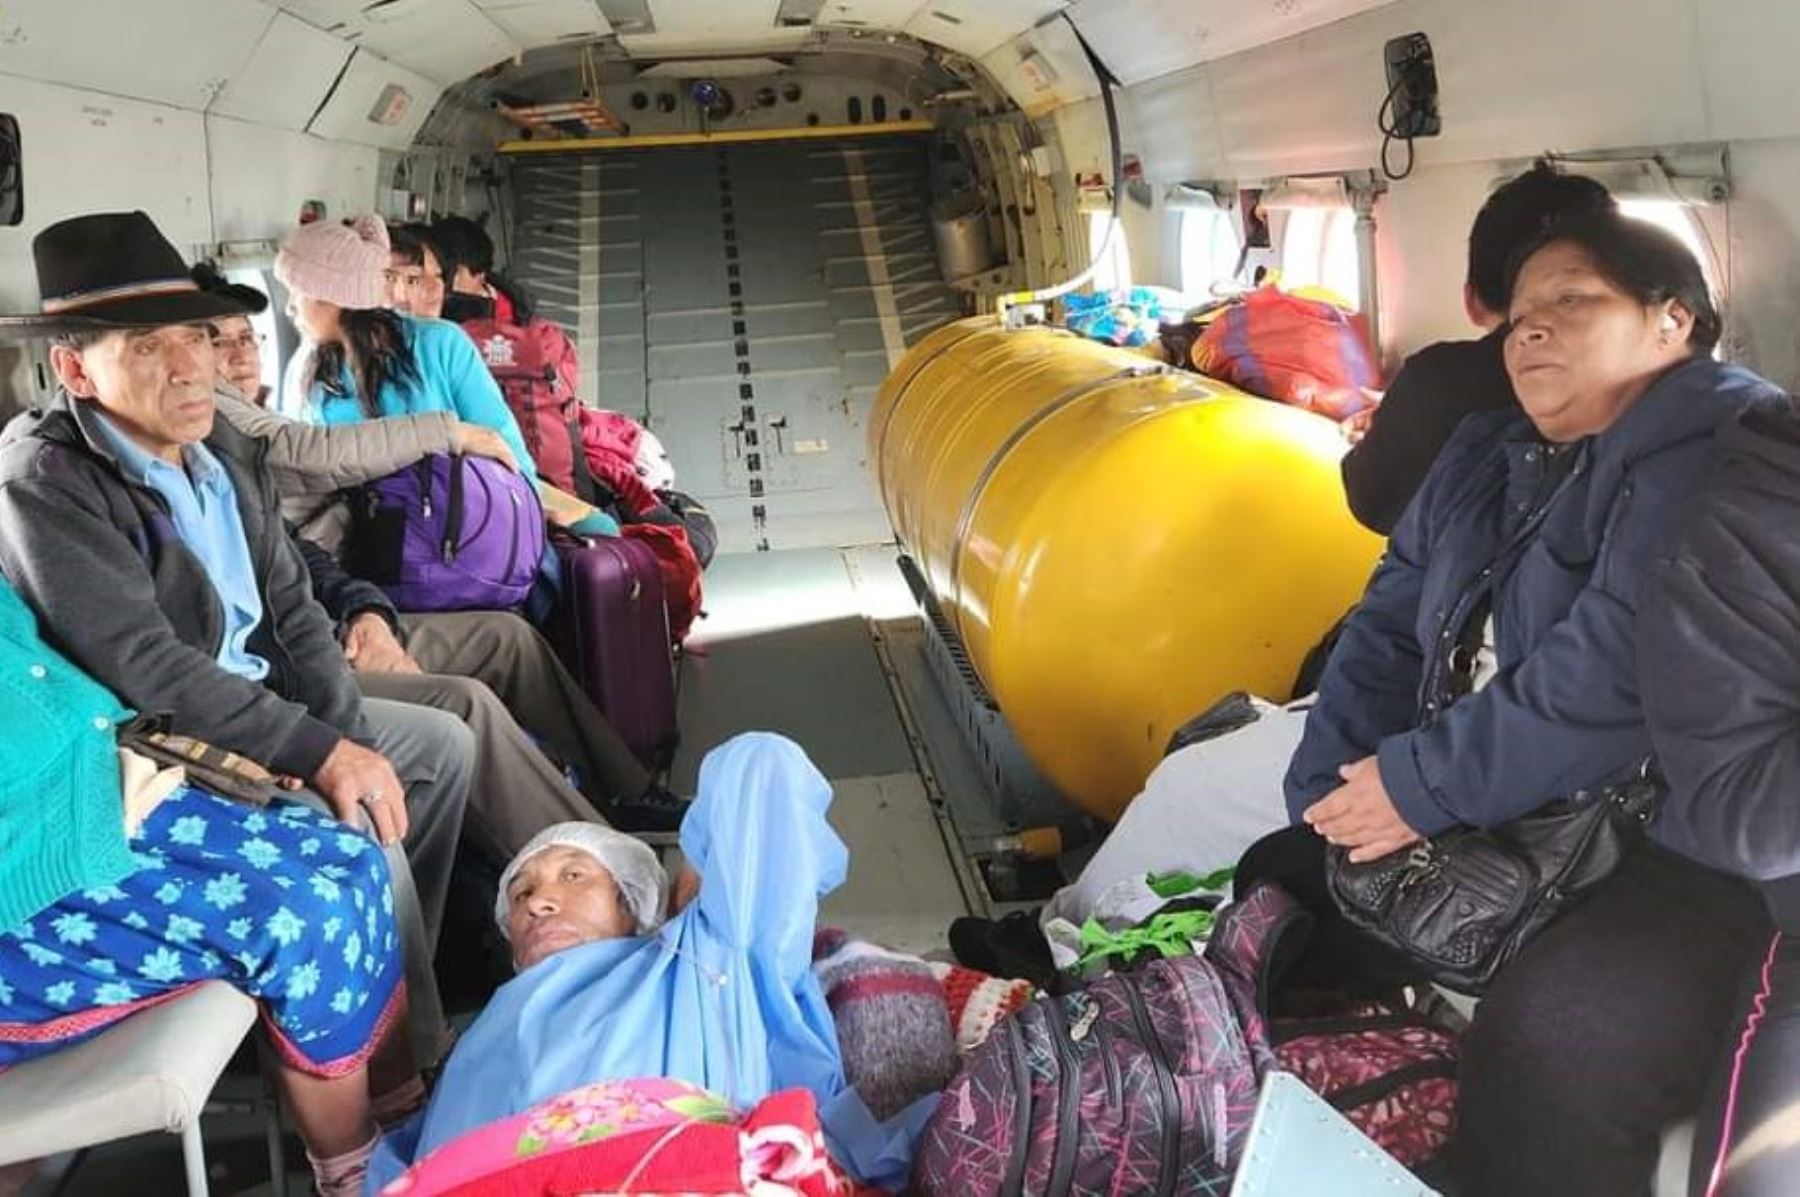 A través del puente aéreo se dispuso que las personas rescatadas sean llevadas al hospital regional de Trujillo, región La Libertad.